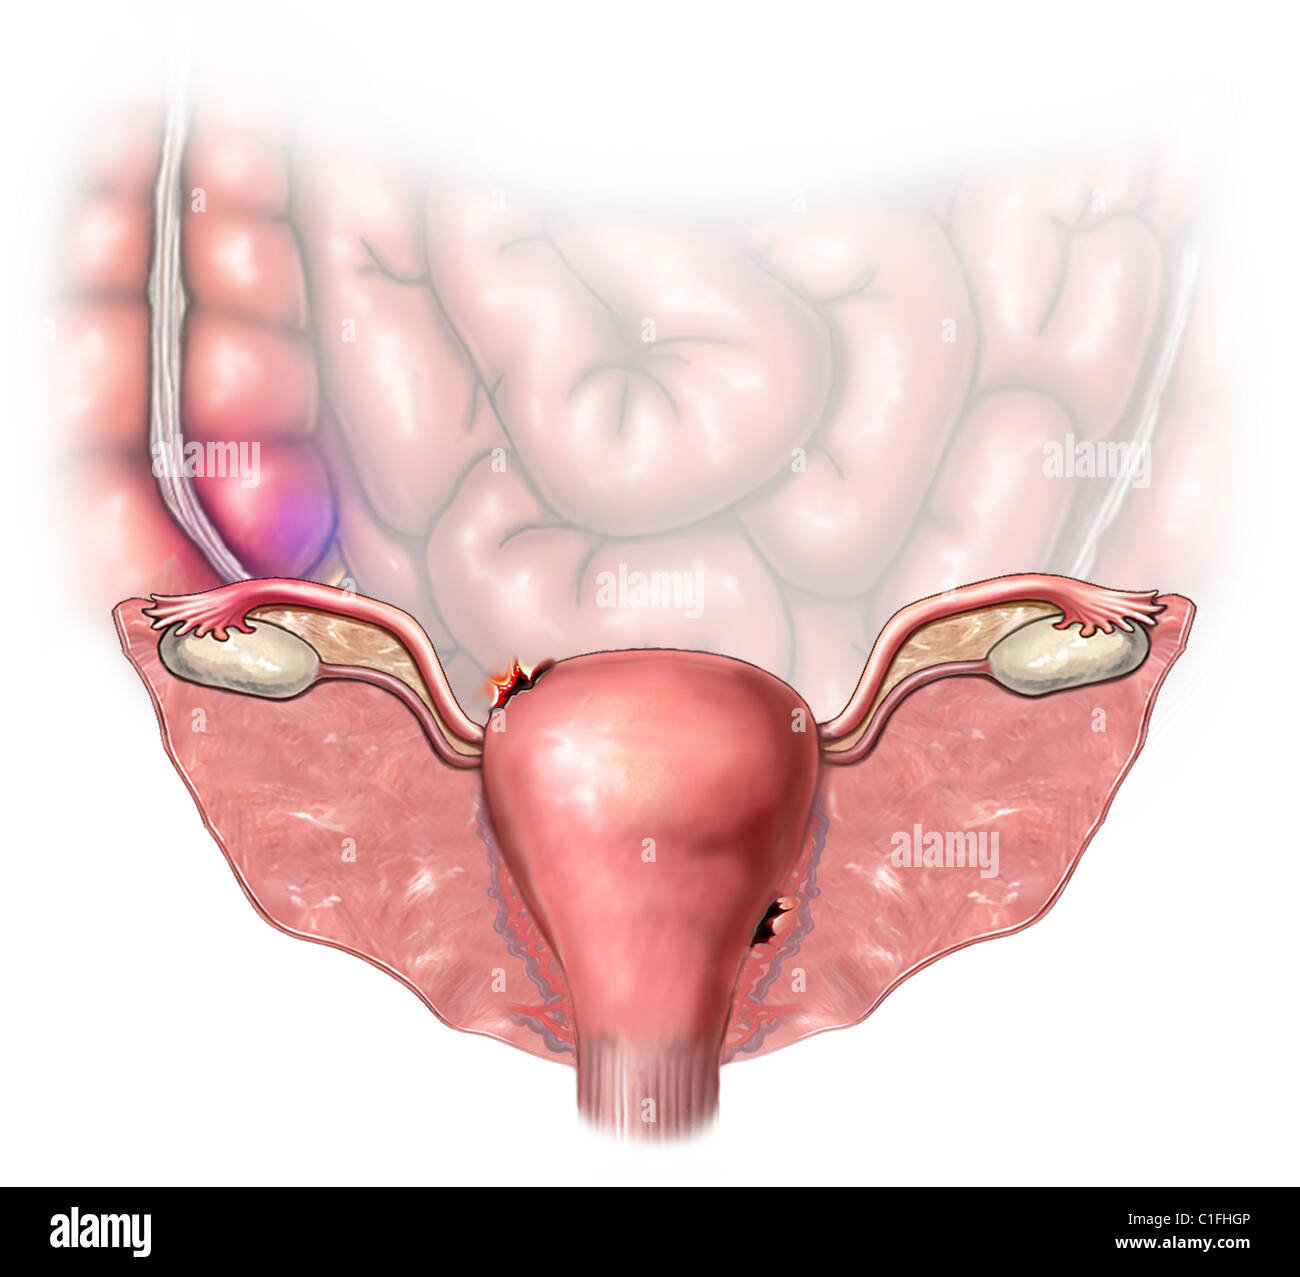 Cette illustration médicale révèle un utérus perforé Photo Stock - Alamy